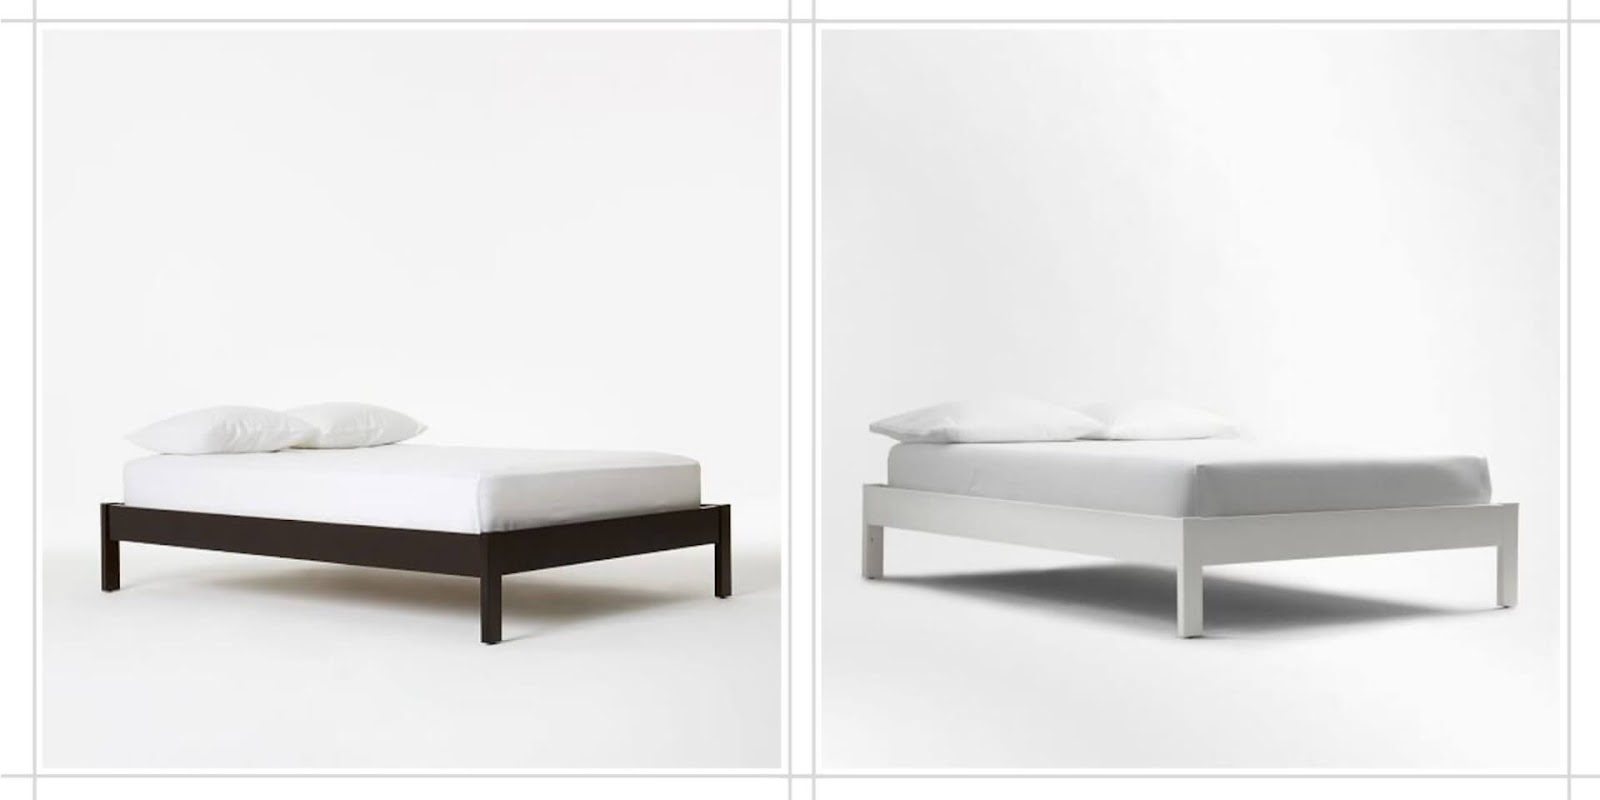 Chiếc giường sắt Amando tại Vua nệm được thiết kế đơn giản, tinh tế và sang trọng